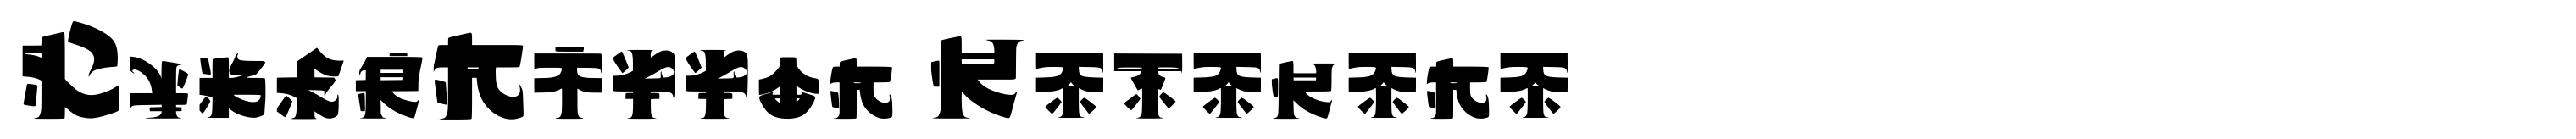 CyberNippon Katakana